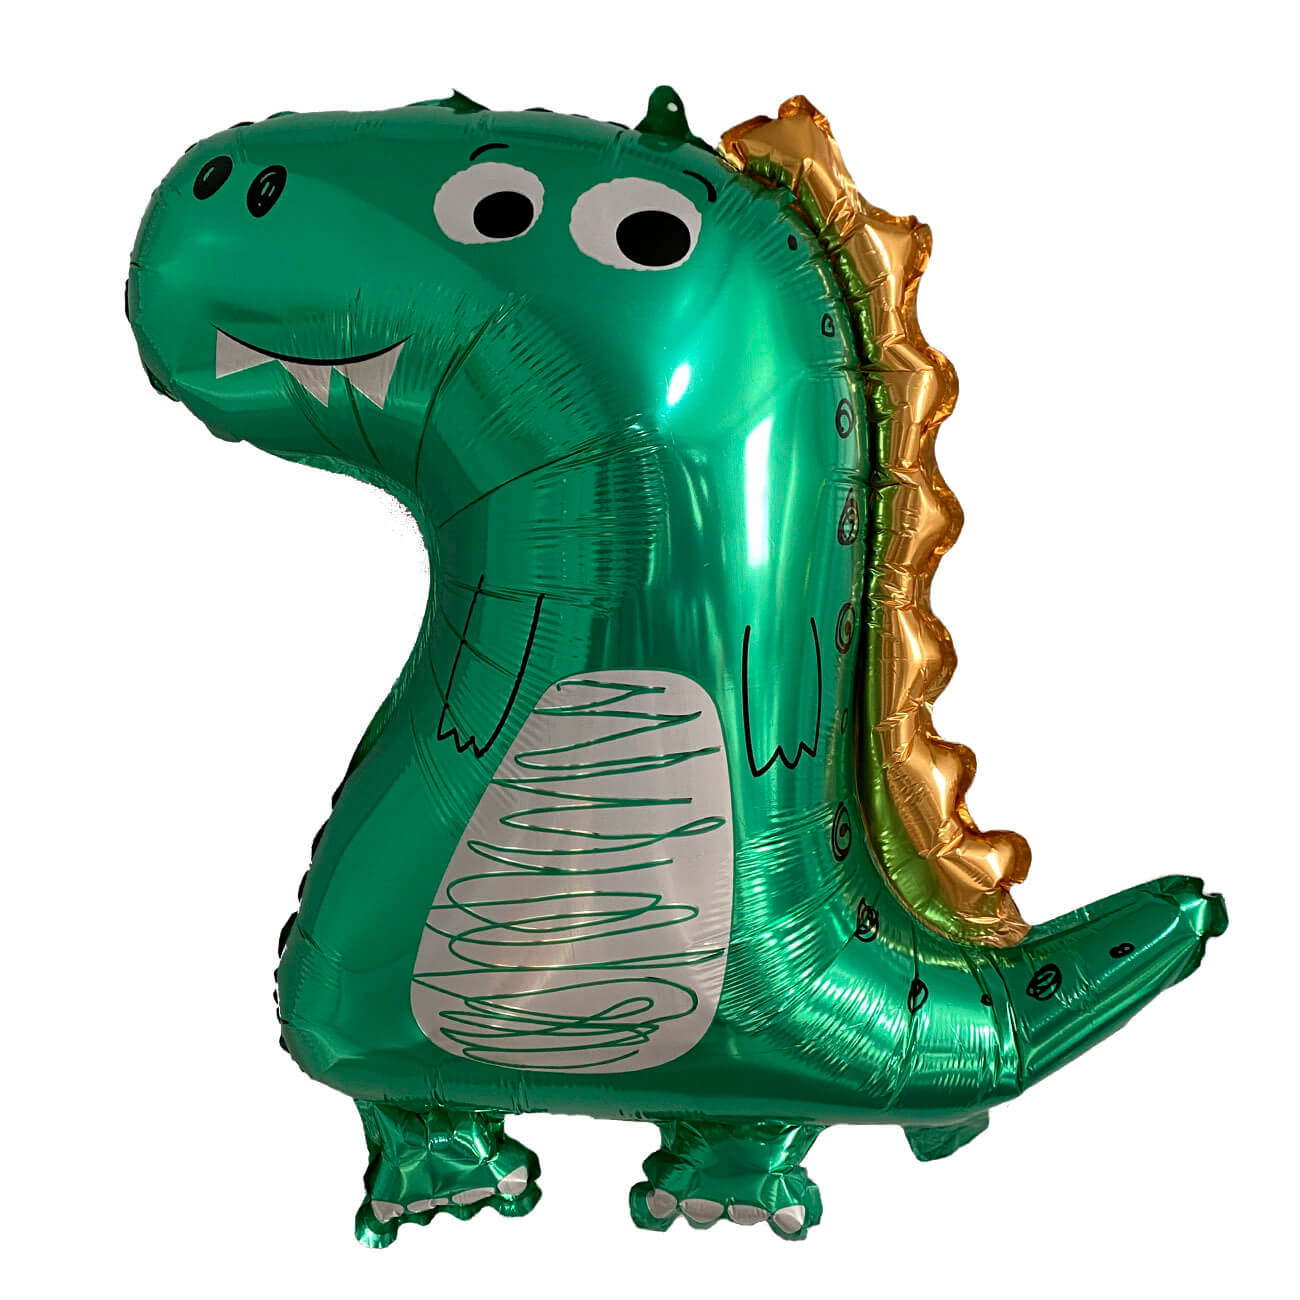 Шар воздушный, 70х59 см, фольга, зеленый, Динозавр, Dino шар воздушный 18